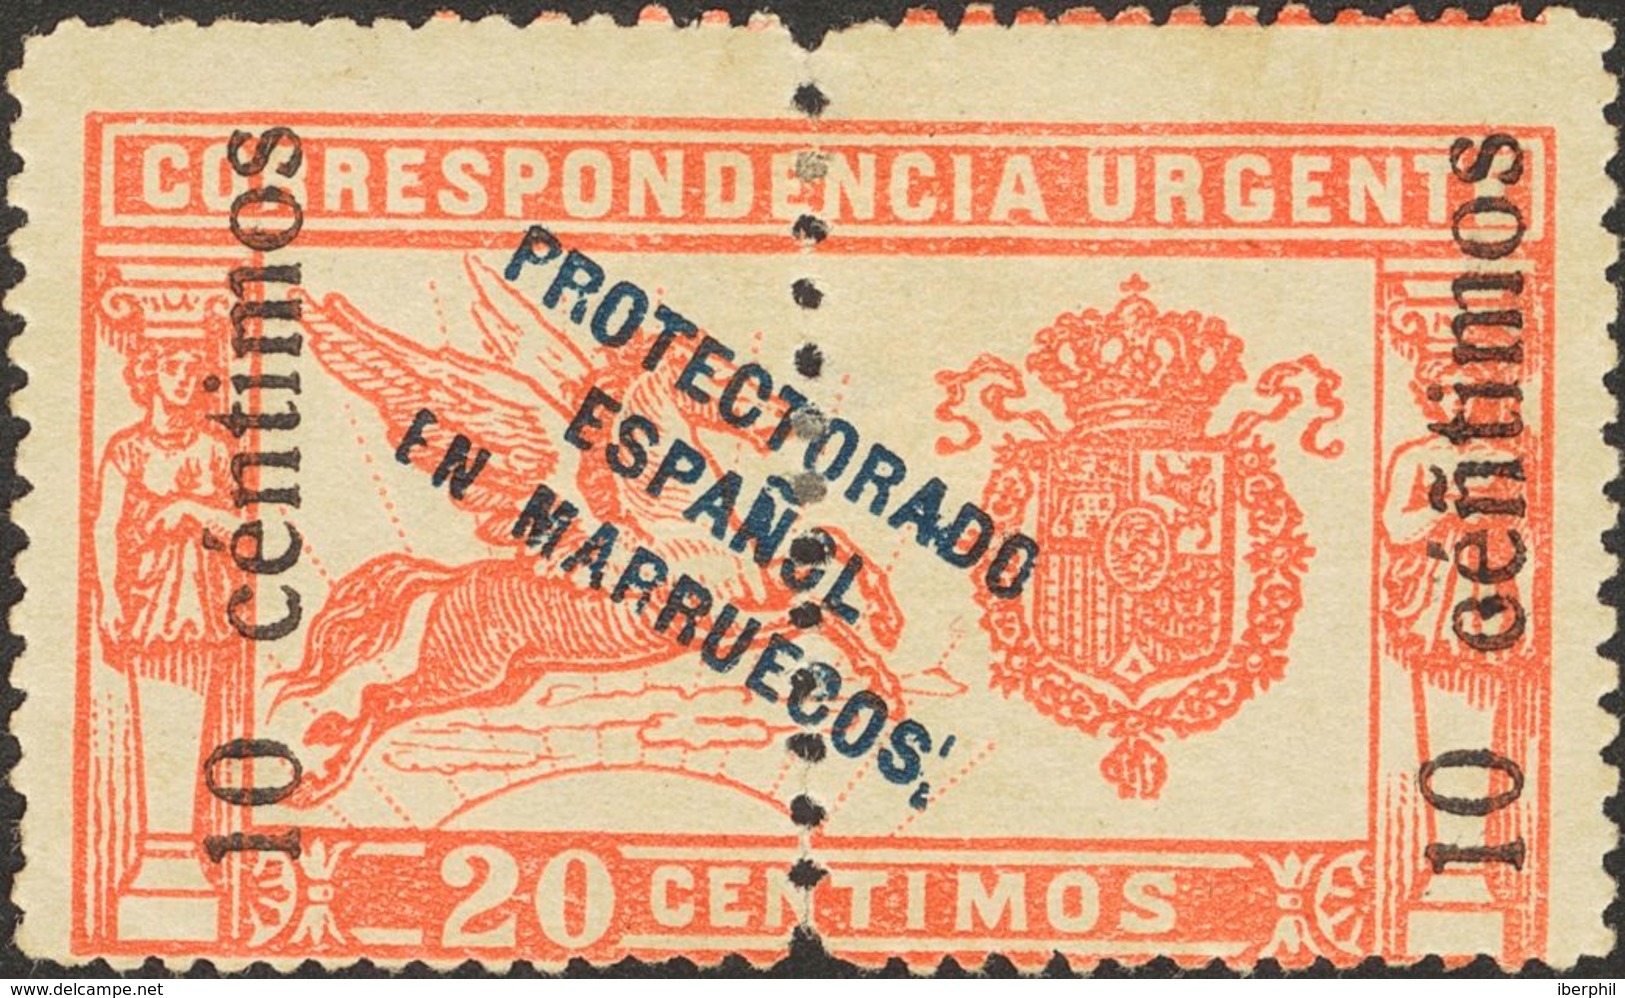 Marruecos. * 66hed 1920. 10 Cts Sobre 20 Cts Rojo. Variedad "Ñ" EN LUGAR DE "N" EN CENTIMOS. MAGNIFICO. 2013 255. - Marocco Spagnolo